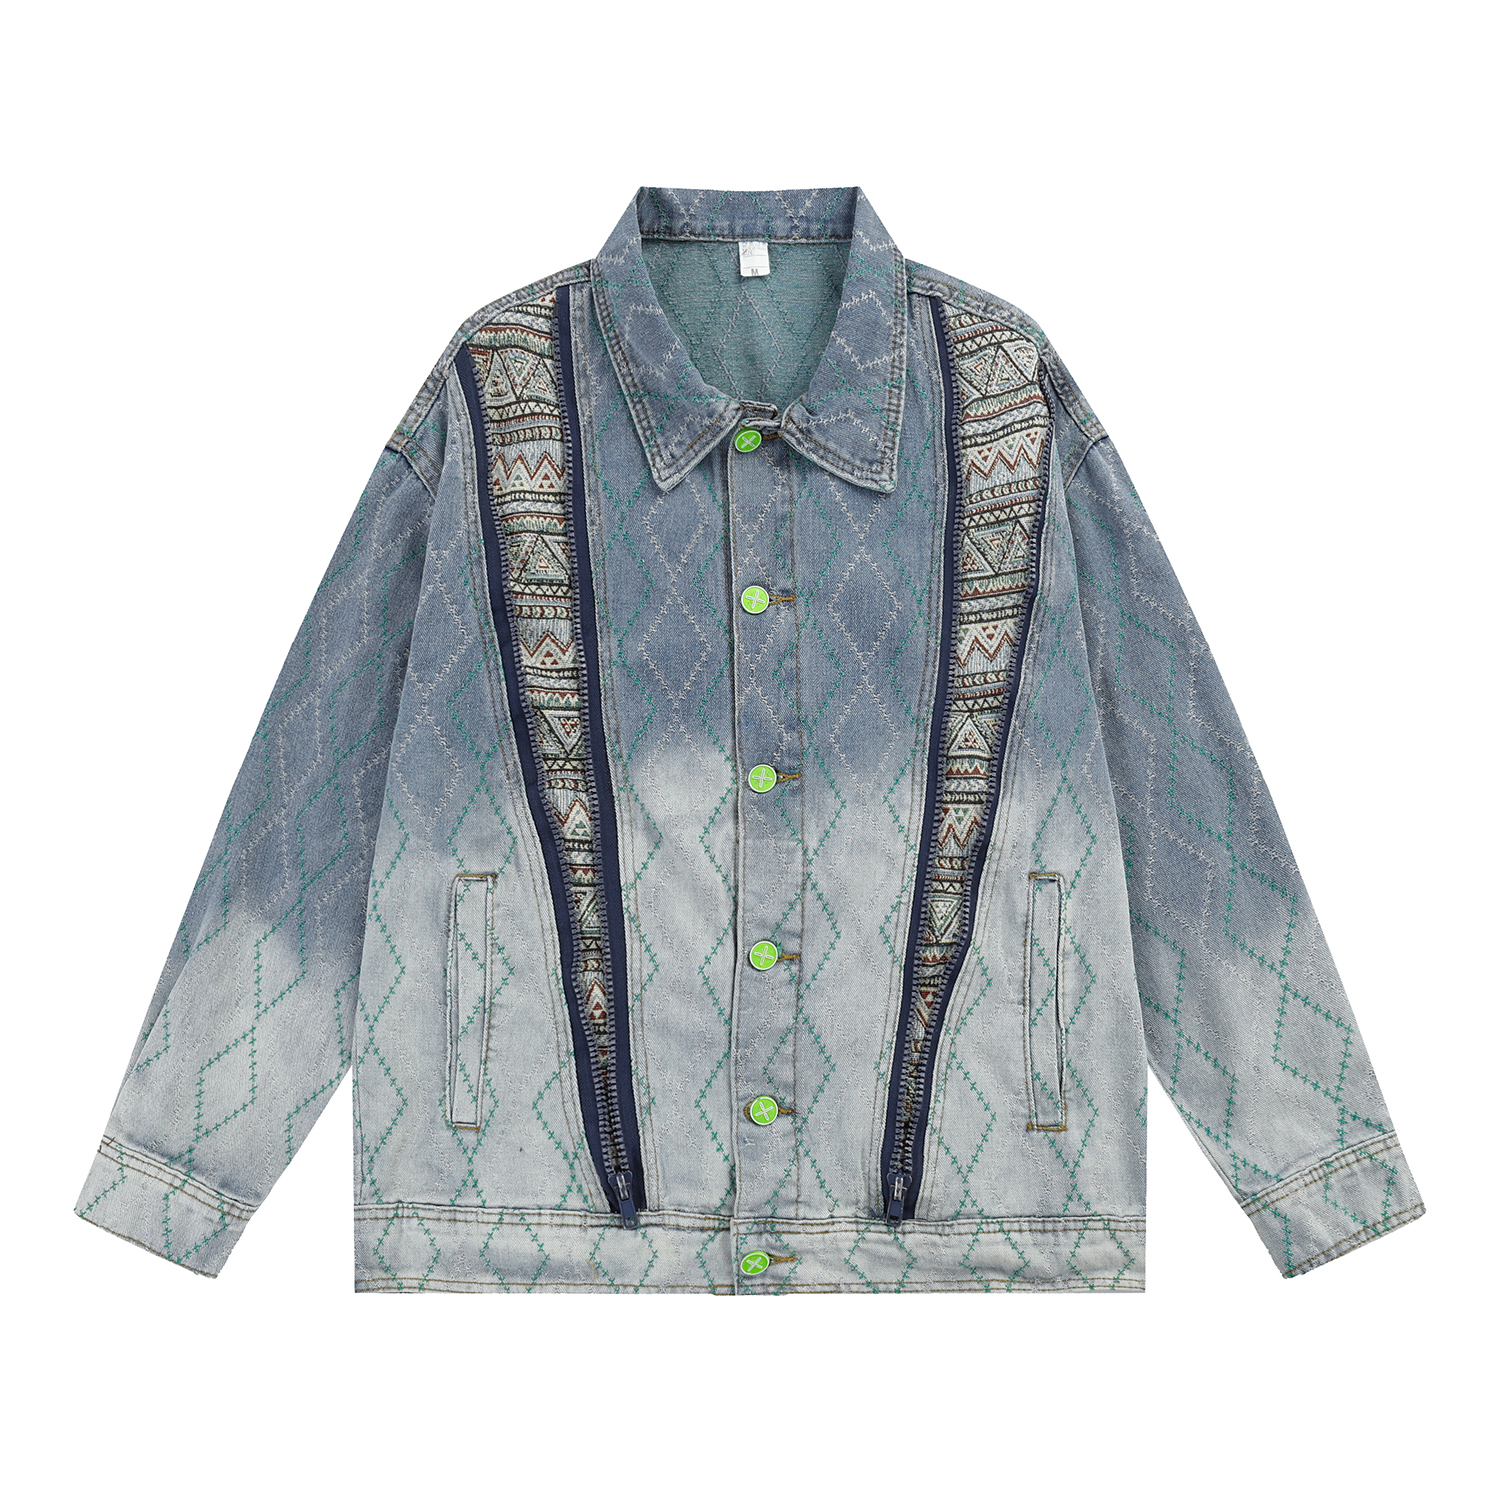 NWT Louis Vuitton Multicolor Tulle Denim Jacket 100% authentic